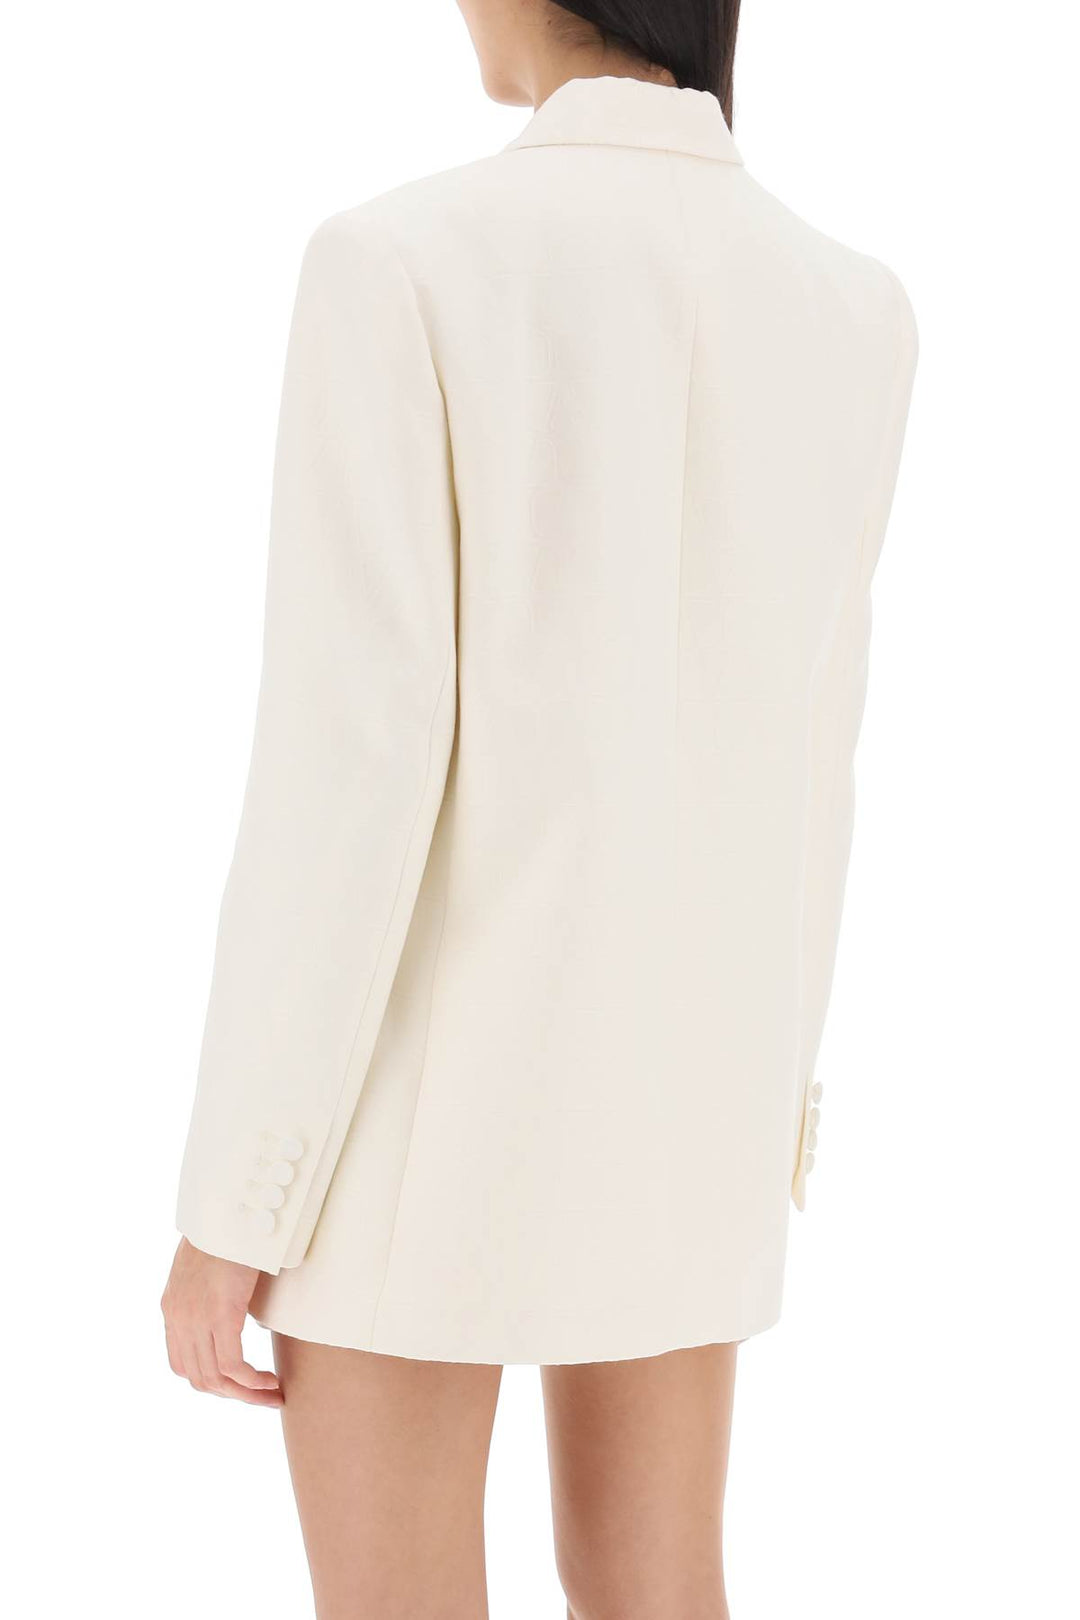 Valentino Garavani Toile Iconographe Blazer In Crepe Couture   White